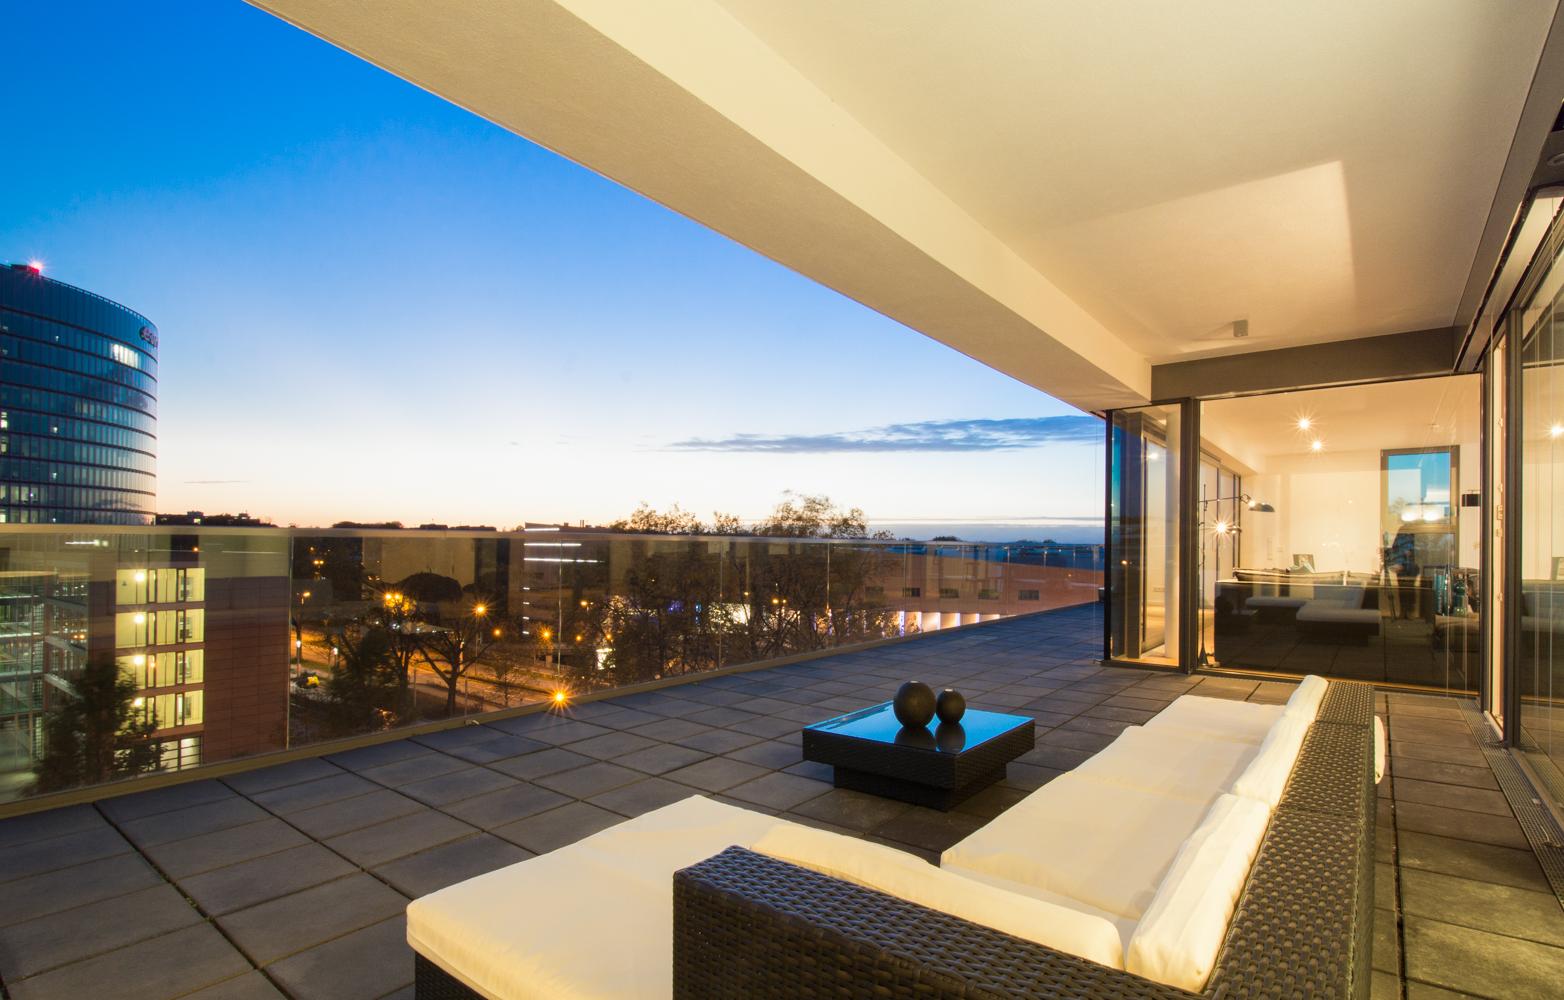 Terrasse #terrasse #penthouse ©www.Luna-homestaging.de